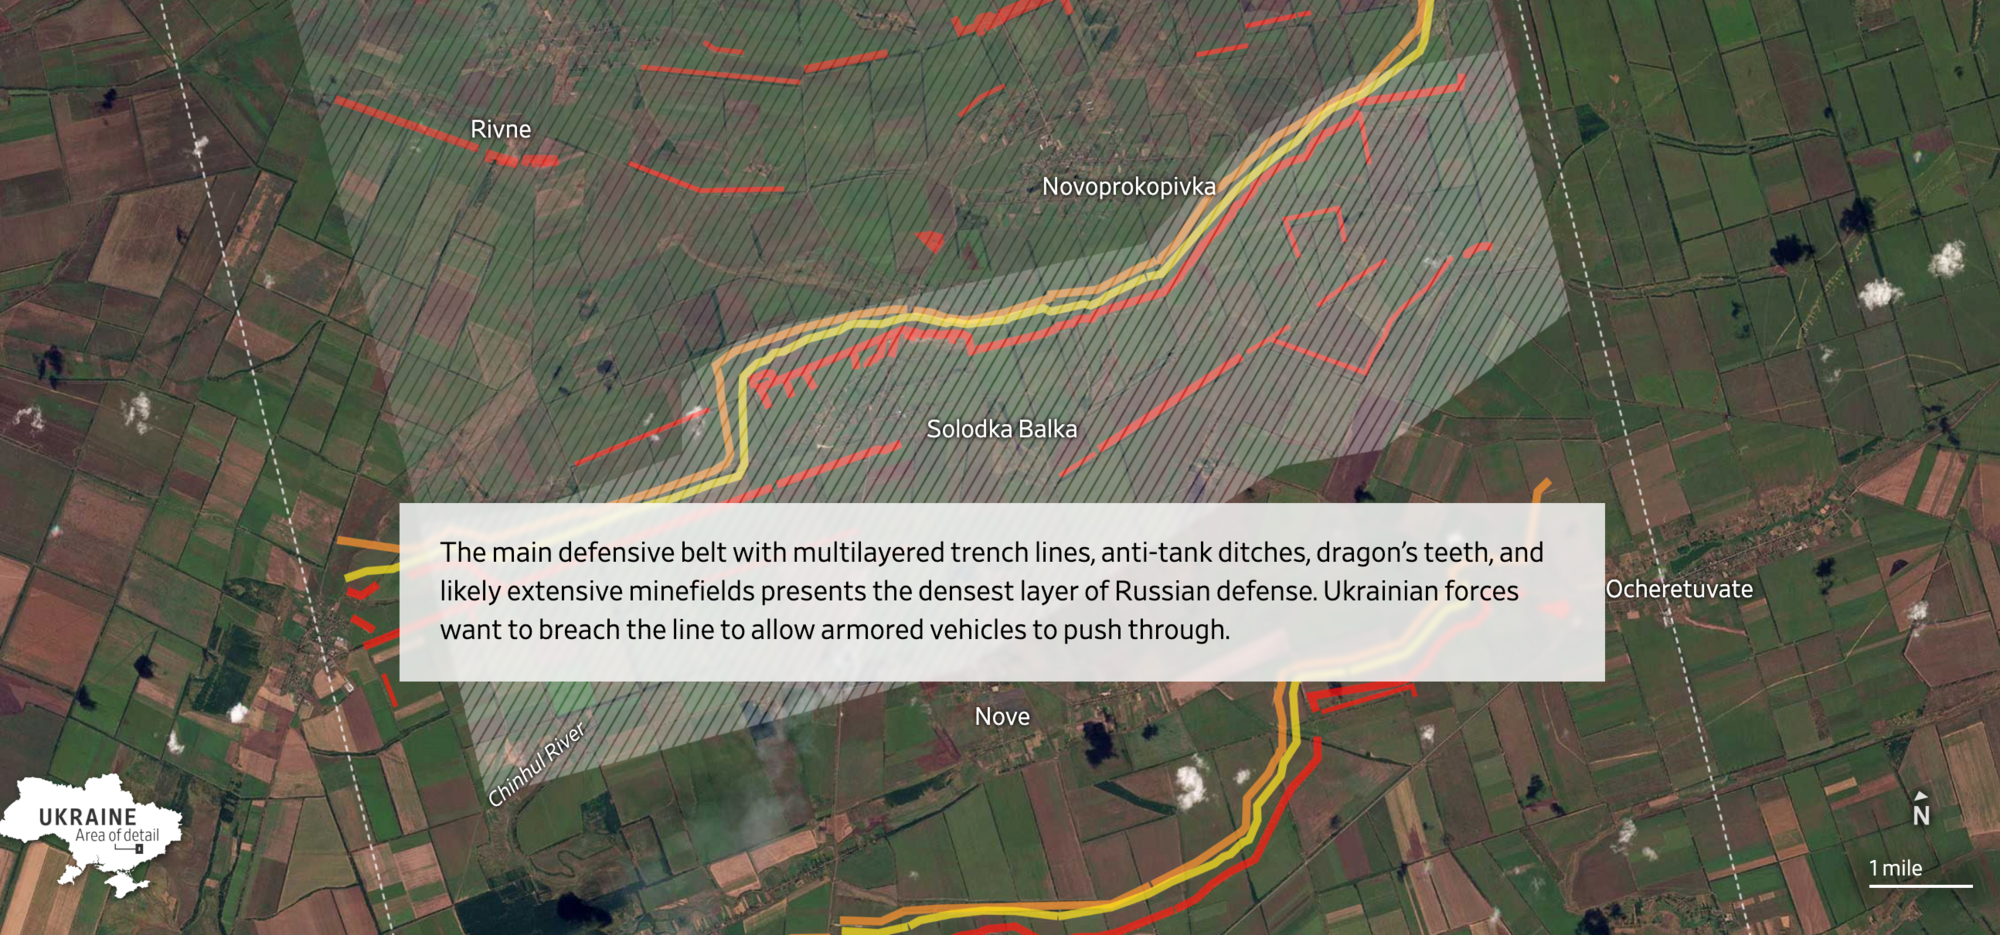 "Теперь понятно, почему контрнаступление ВСУ такое медленное": западные аналитики визуализировали российские укрепления на юге Украины. Схема